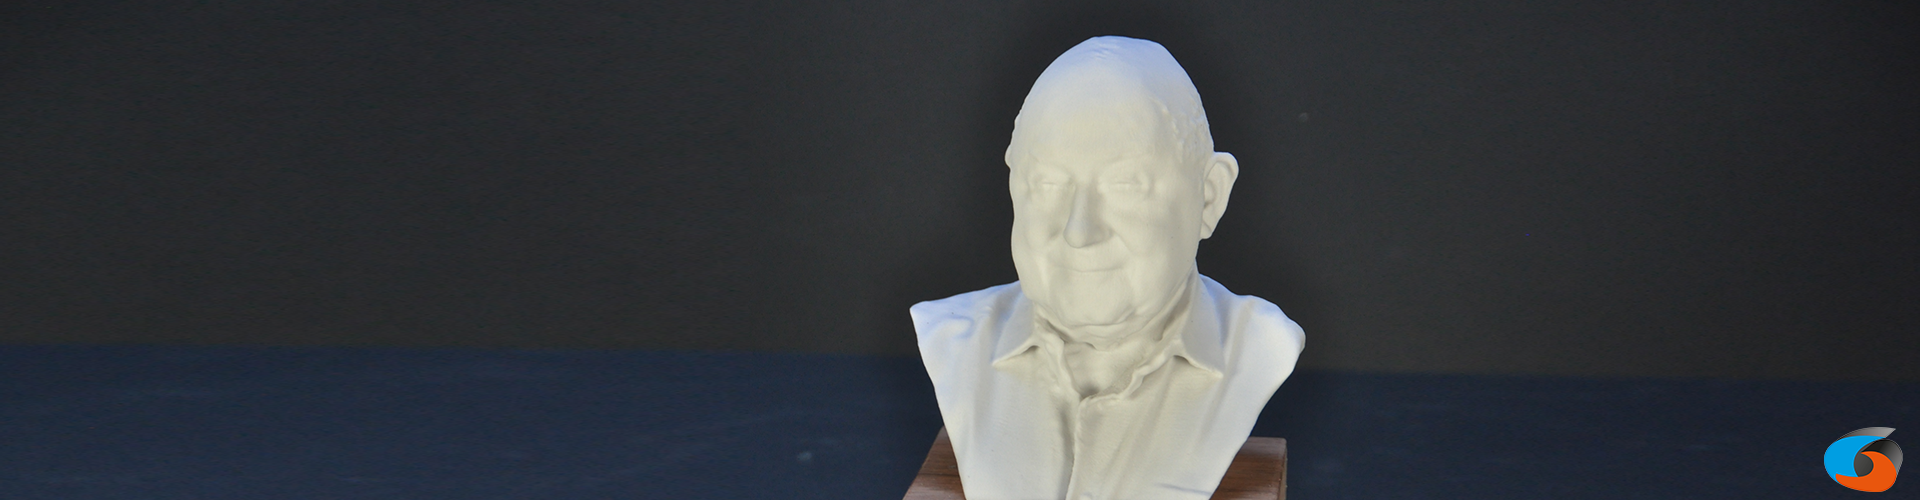 3D-beeldje van jezelf laten maken - 3D-selfie laten 3D-printen